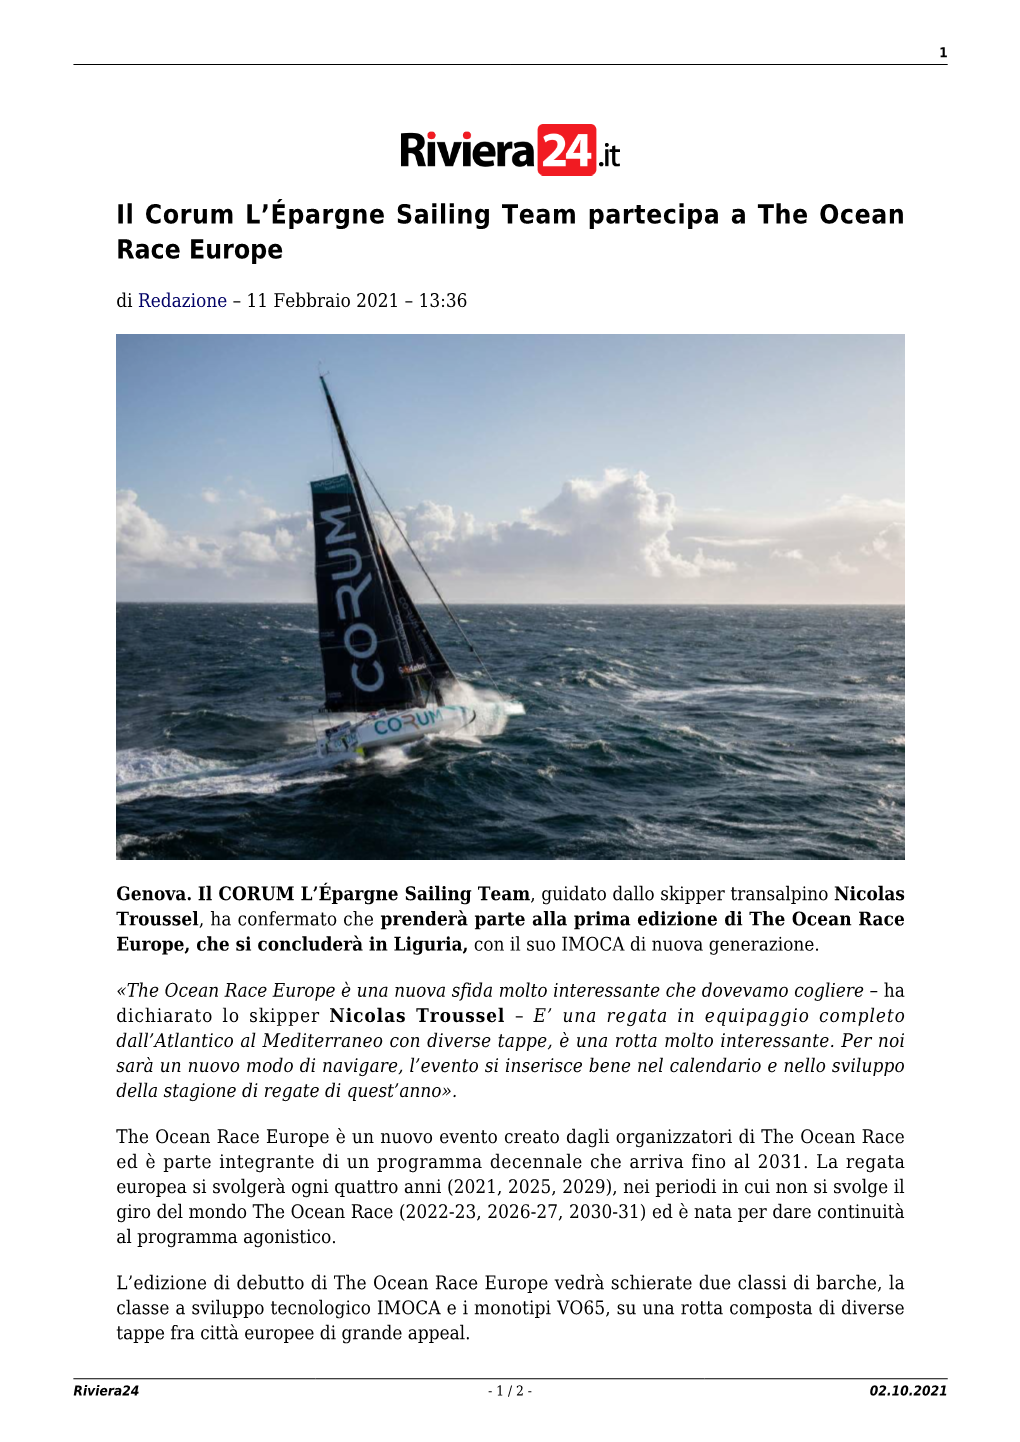 Il Corum L'épargne Sailing Team Partecipa a the Ocean Race Europe